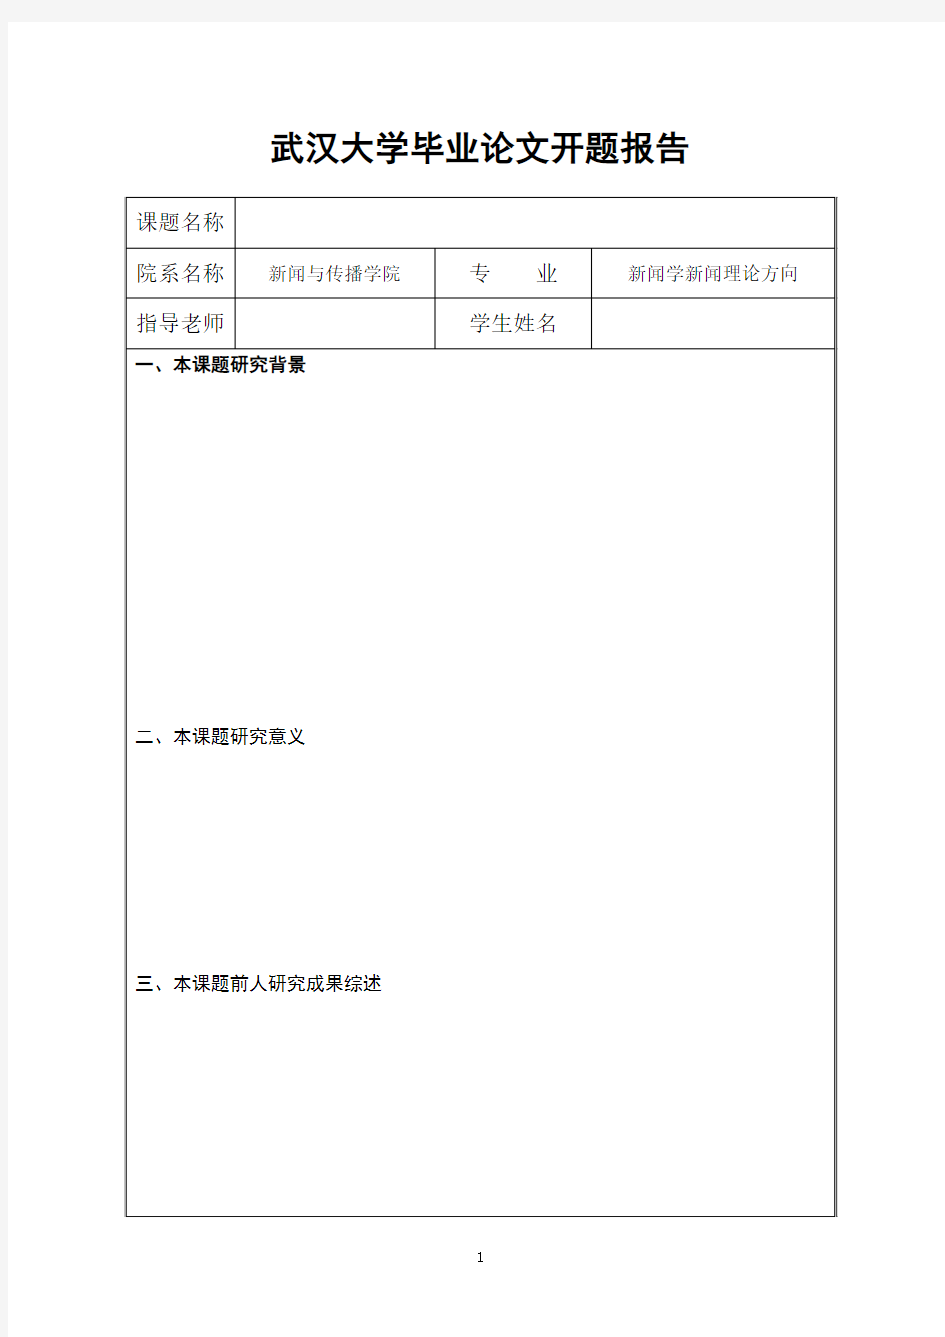 武汉大学硕士毕业论文开题报告范本 - 格式